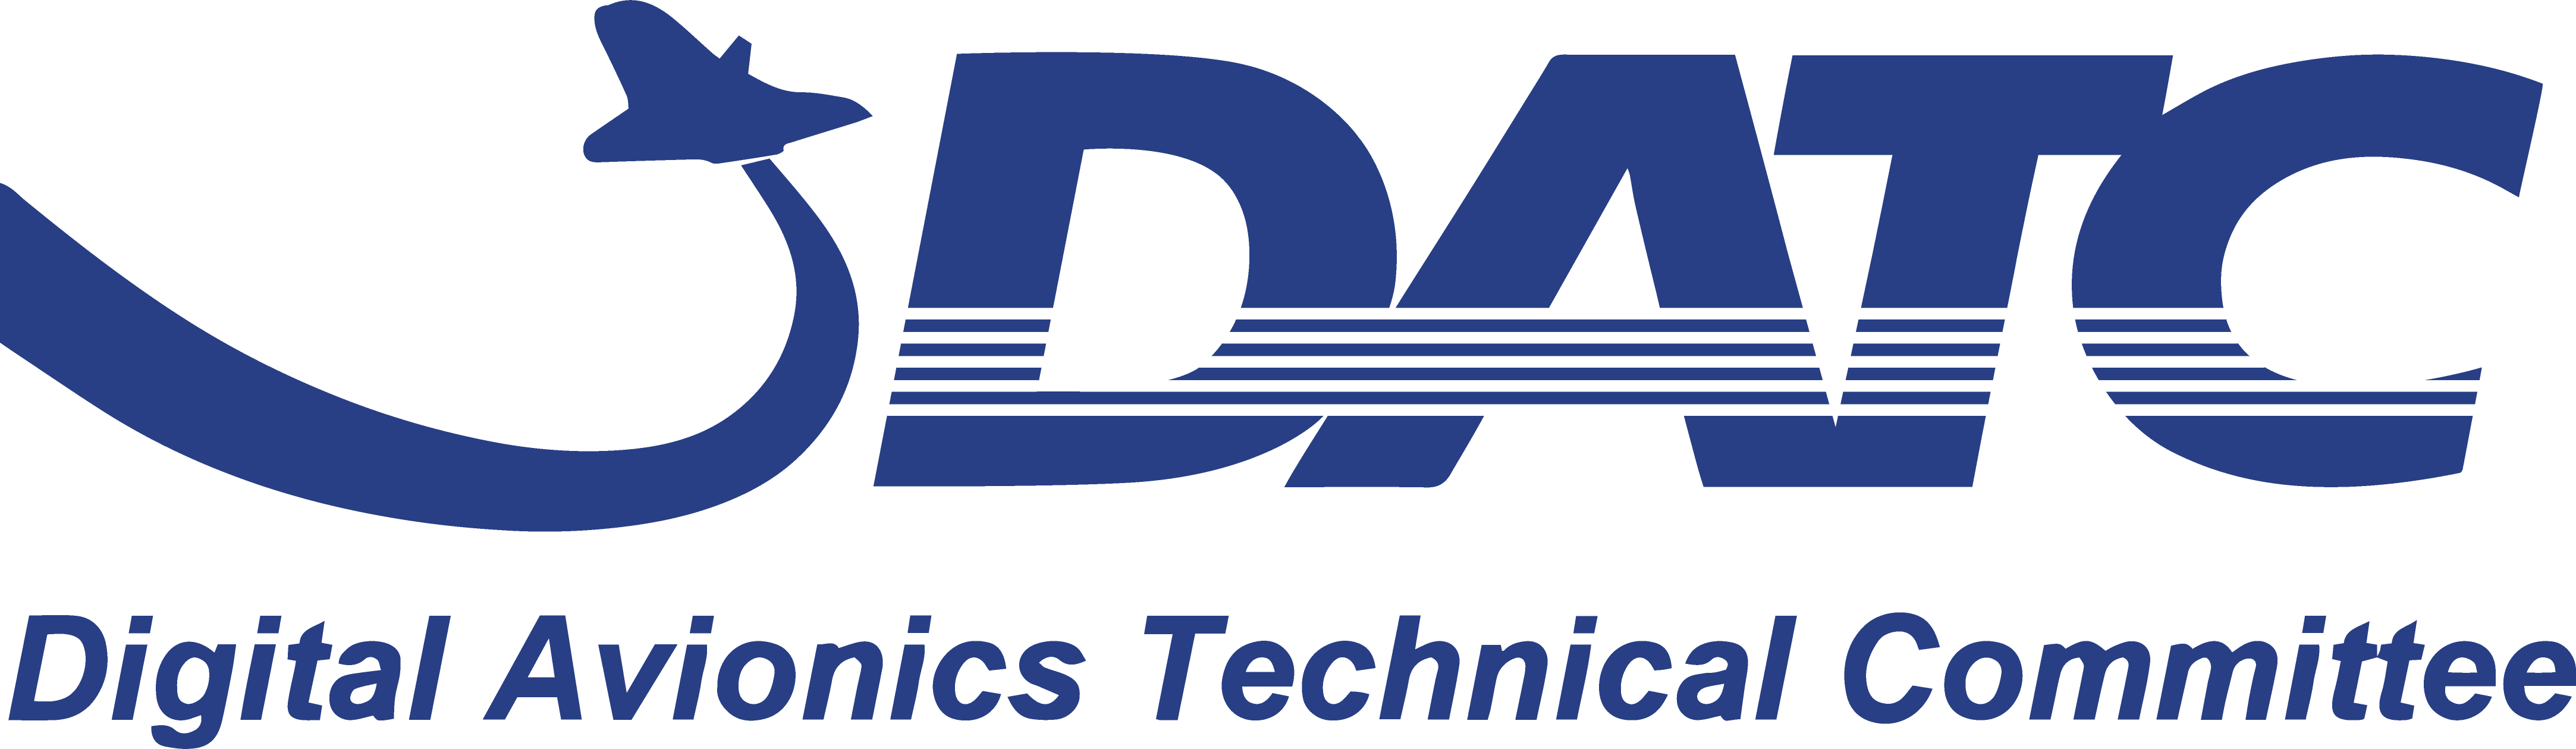 DATC Logo